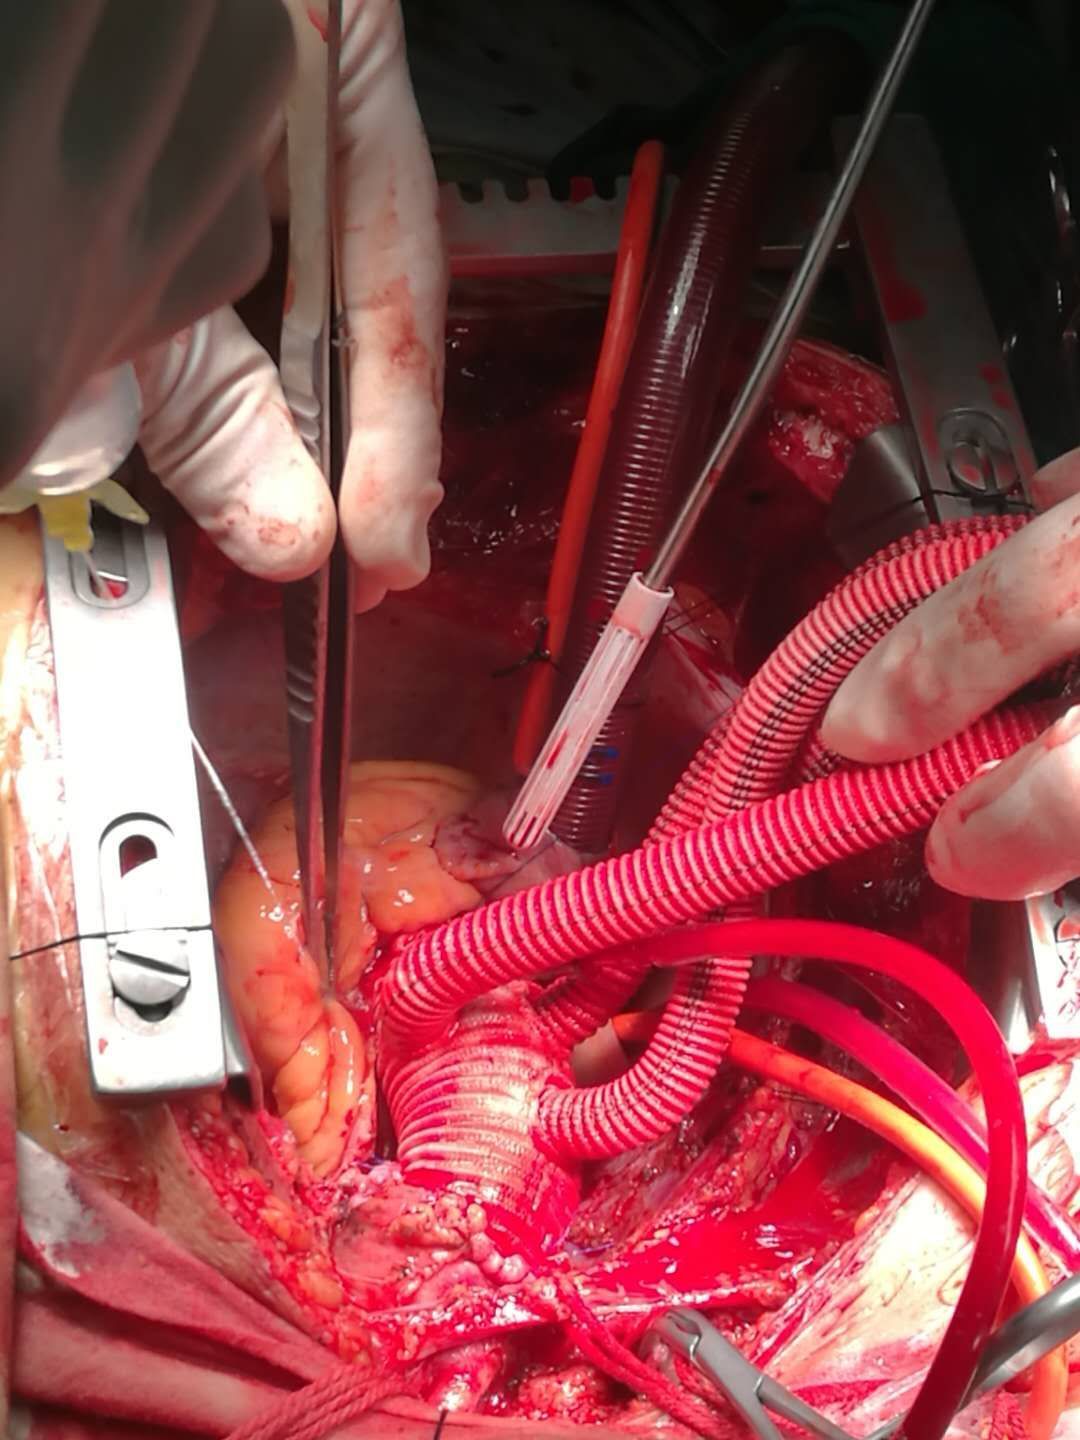 主动脉夹层手术方式图片